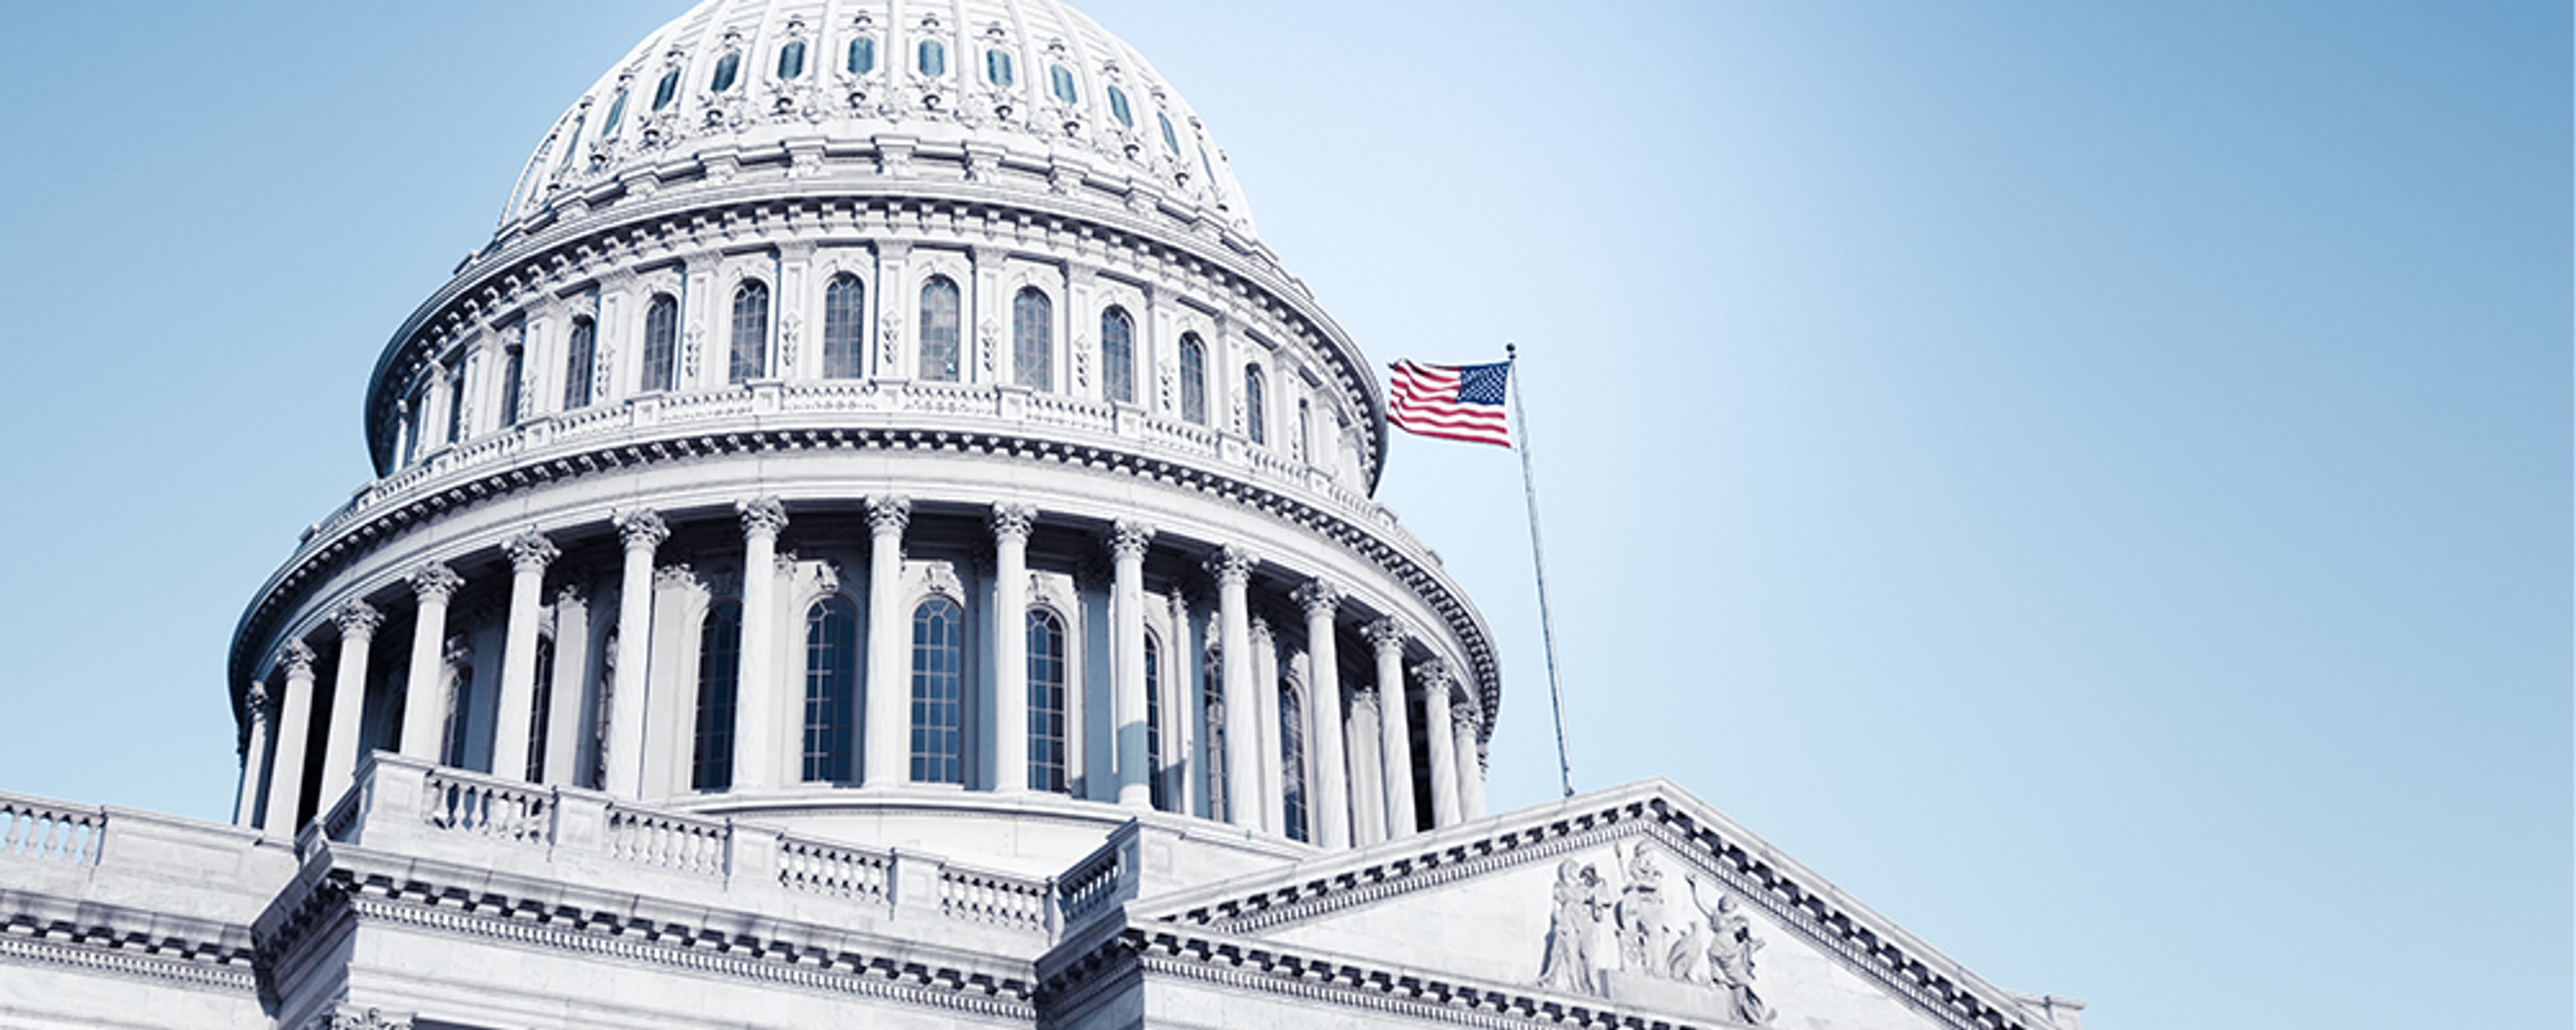 Five False Claims Underscore the Case Against the Senate’s Leading Antitrust Bills